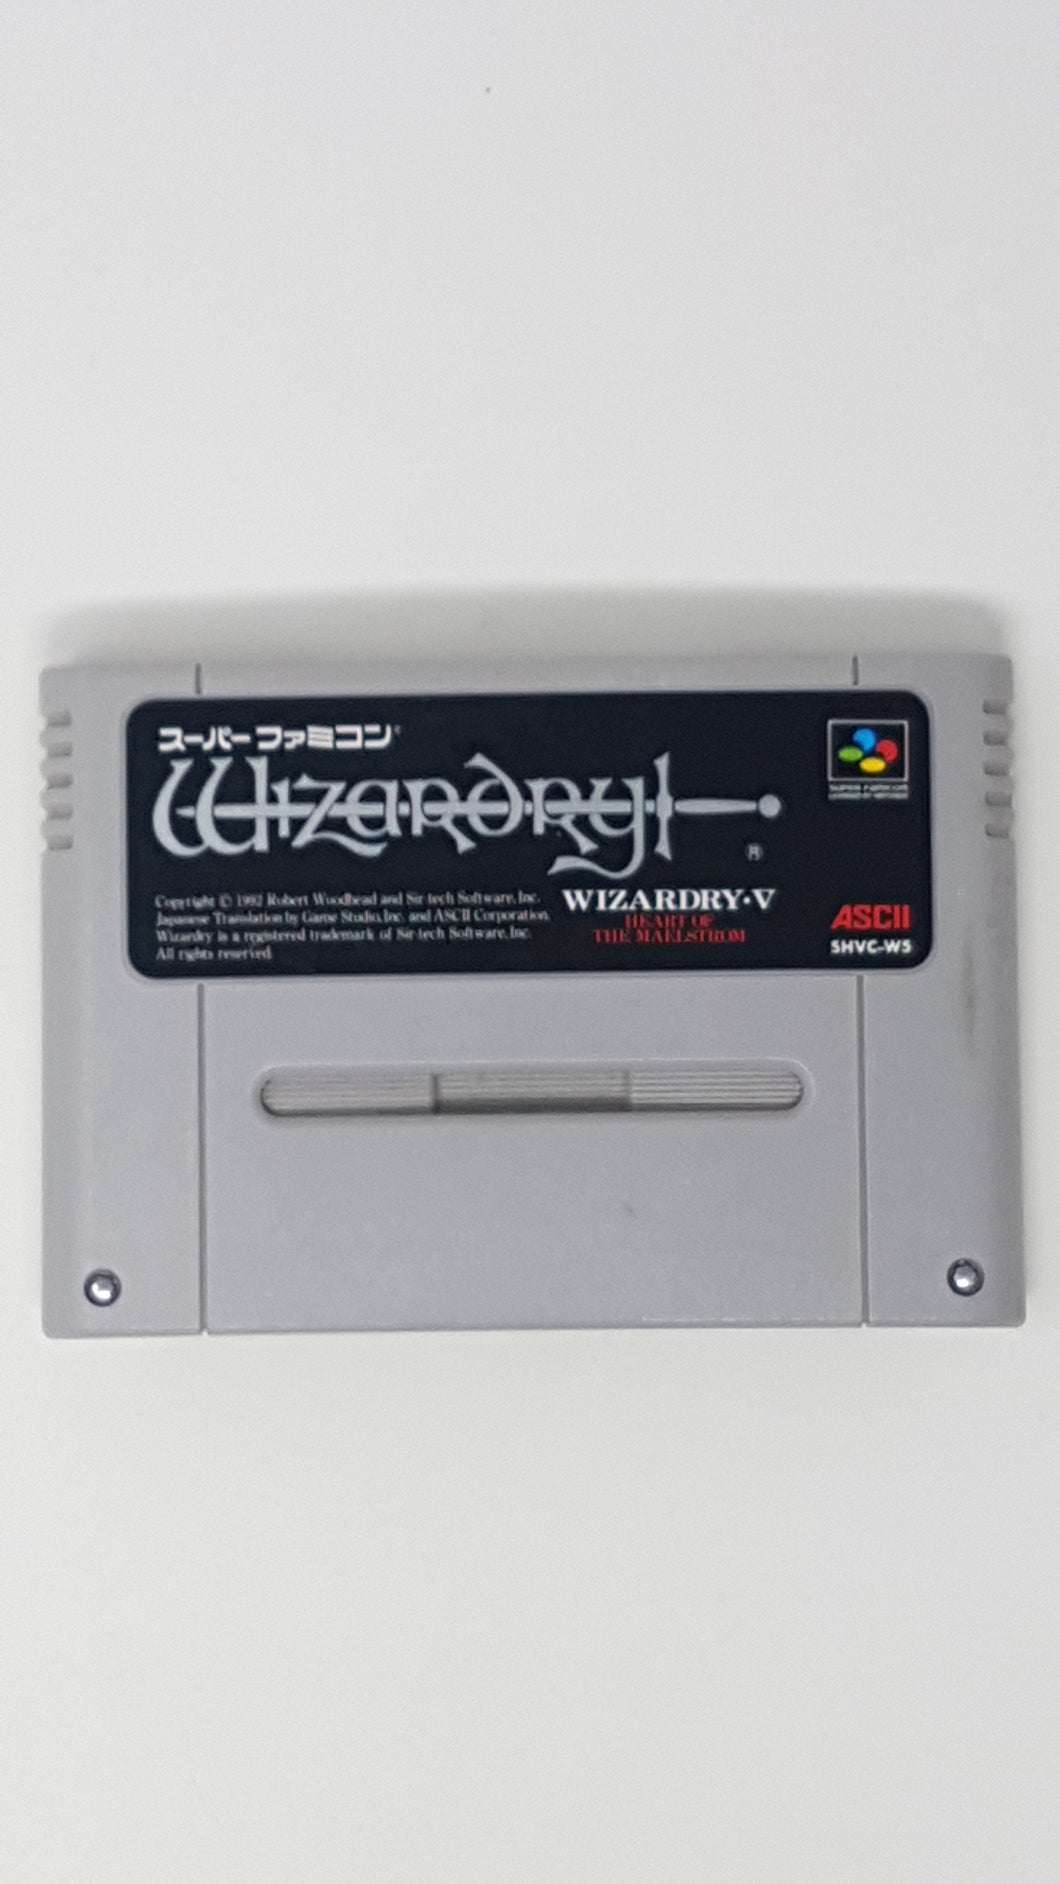 Wizardry 5 - [Import] Super Famicom | SFC